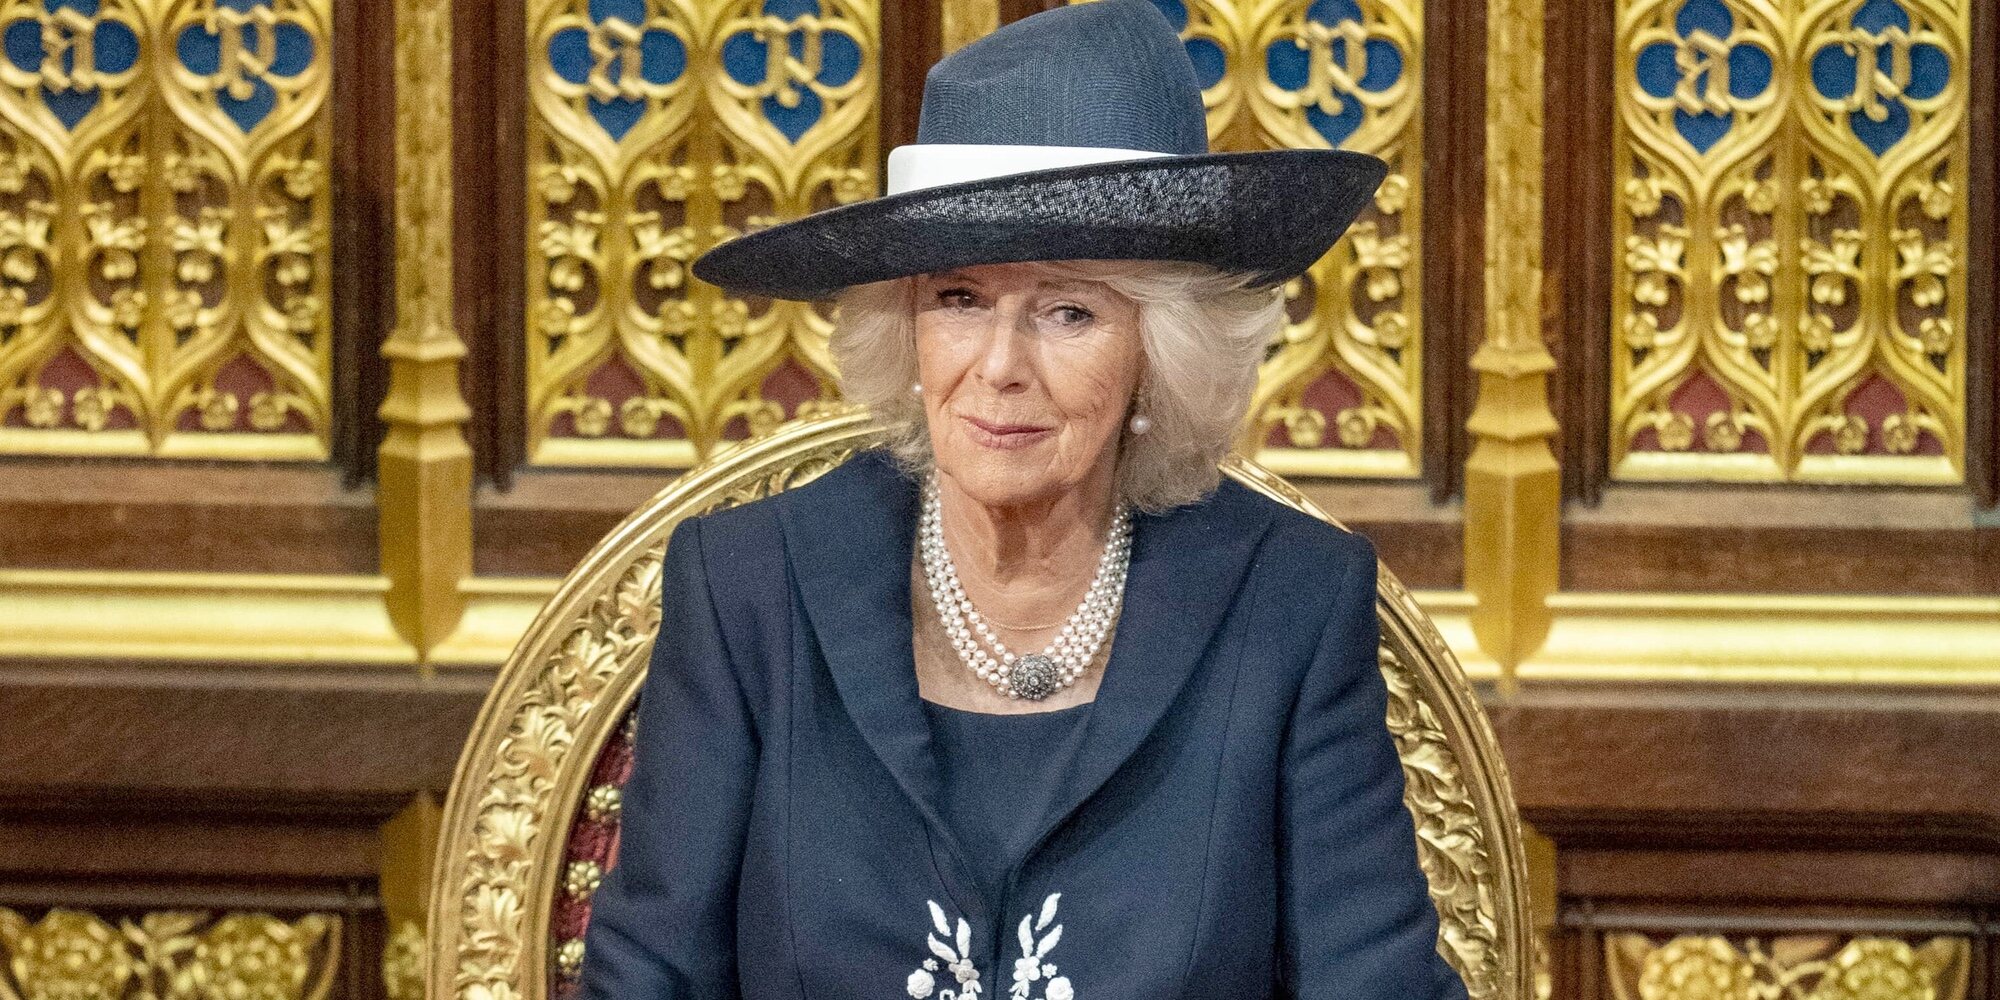 La controversia con el diamante de la corona que iba a llevar la Reina Camilla en la Coronación de Carlos III